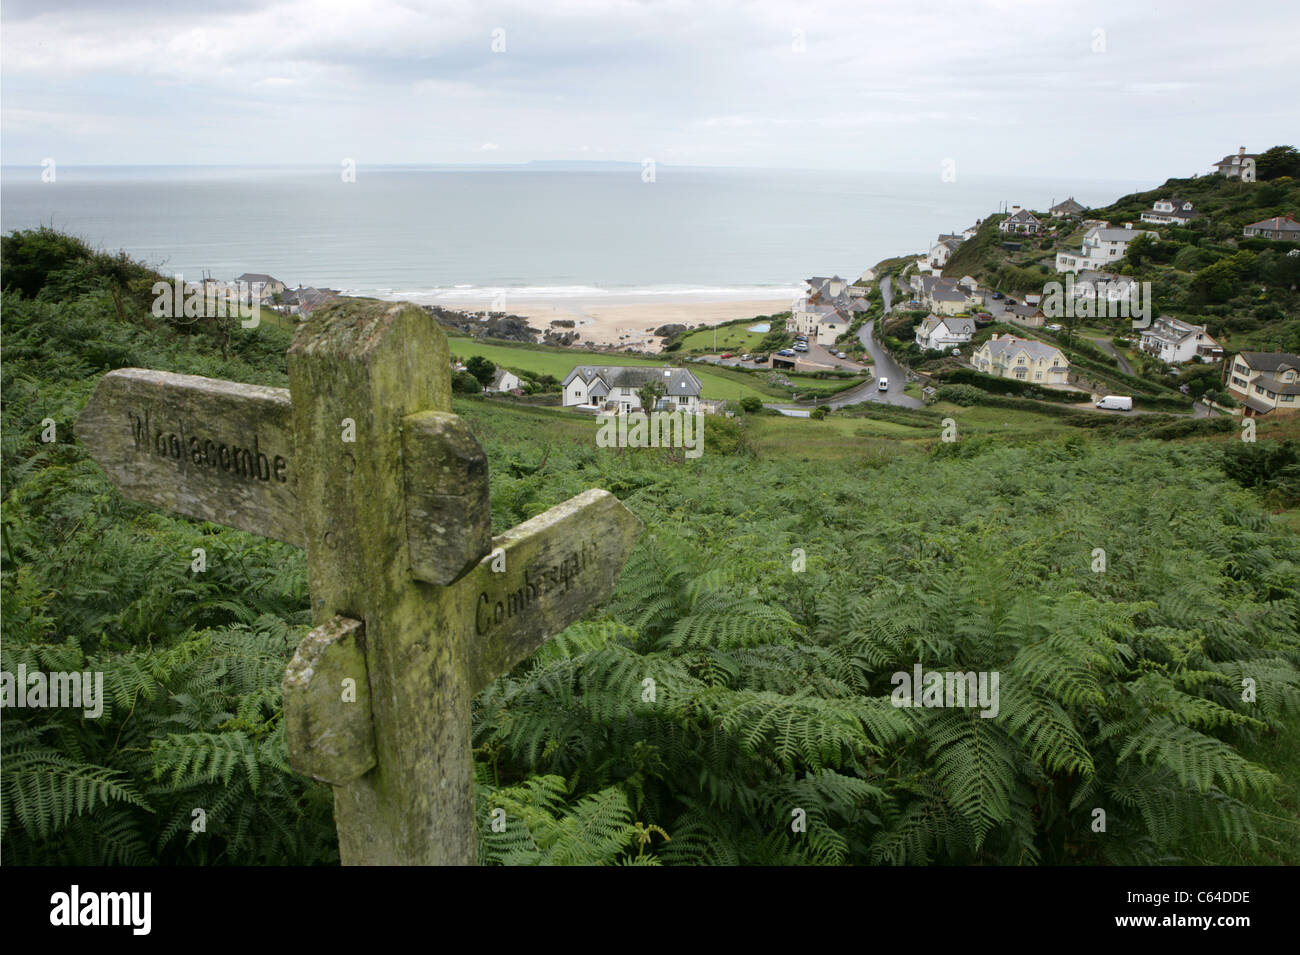 Ubicación: La señal de dirección indica Woolacombe y Combesgate con vistas a la playa de Mortehoe en North Devon. Un destino popular de vacaciones en West Country. Foto de stock